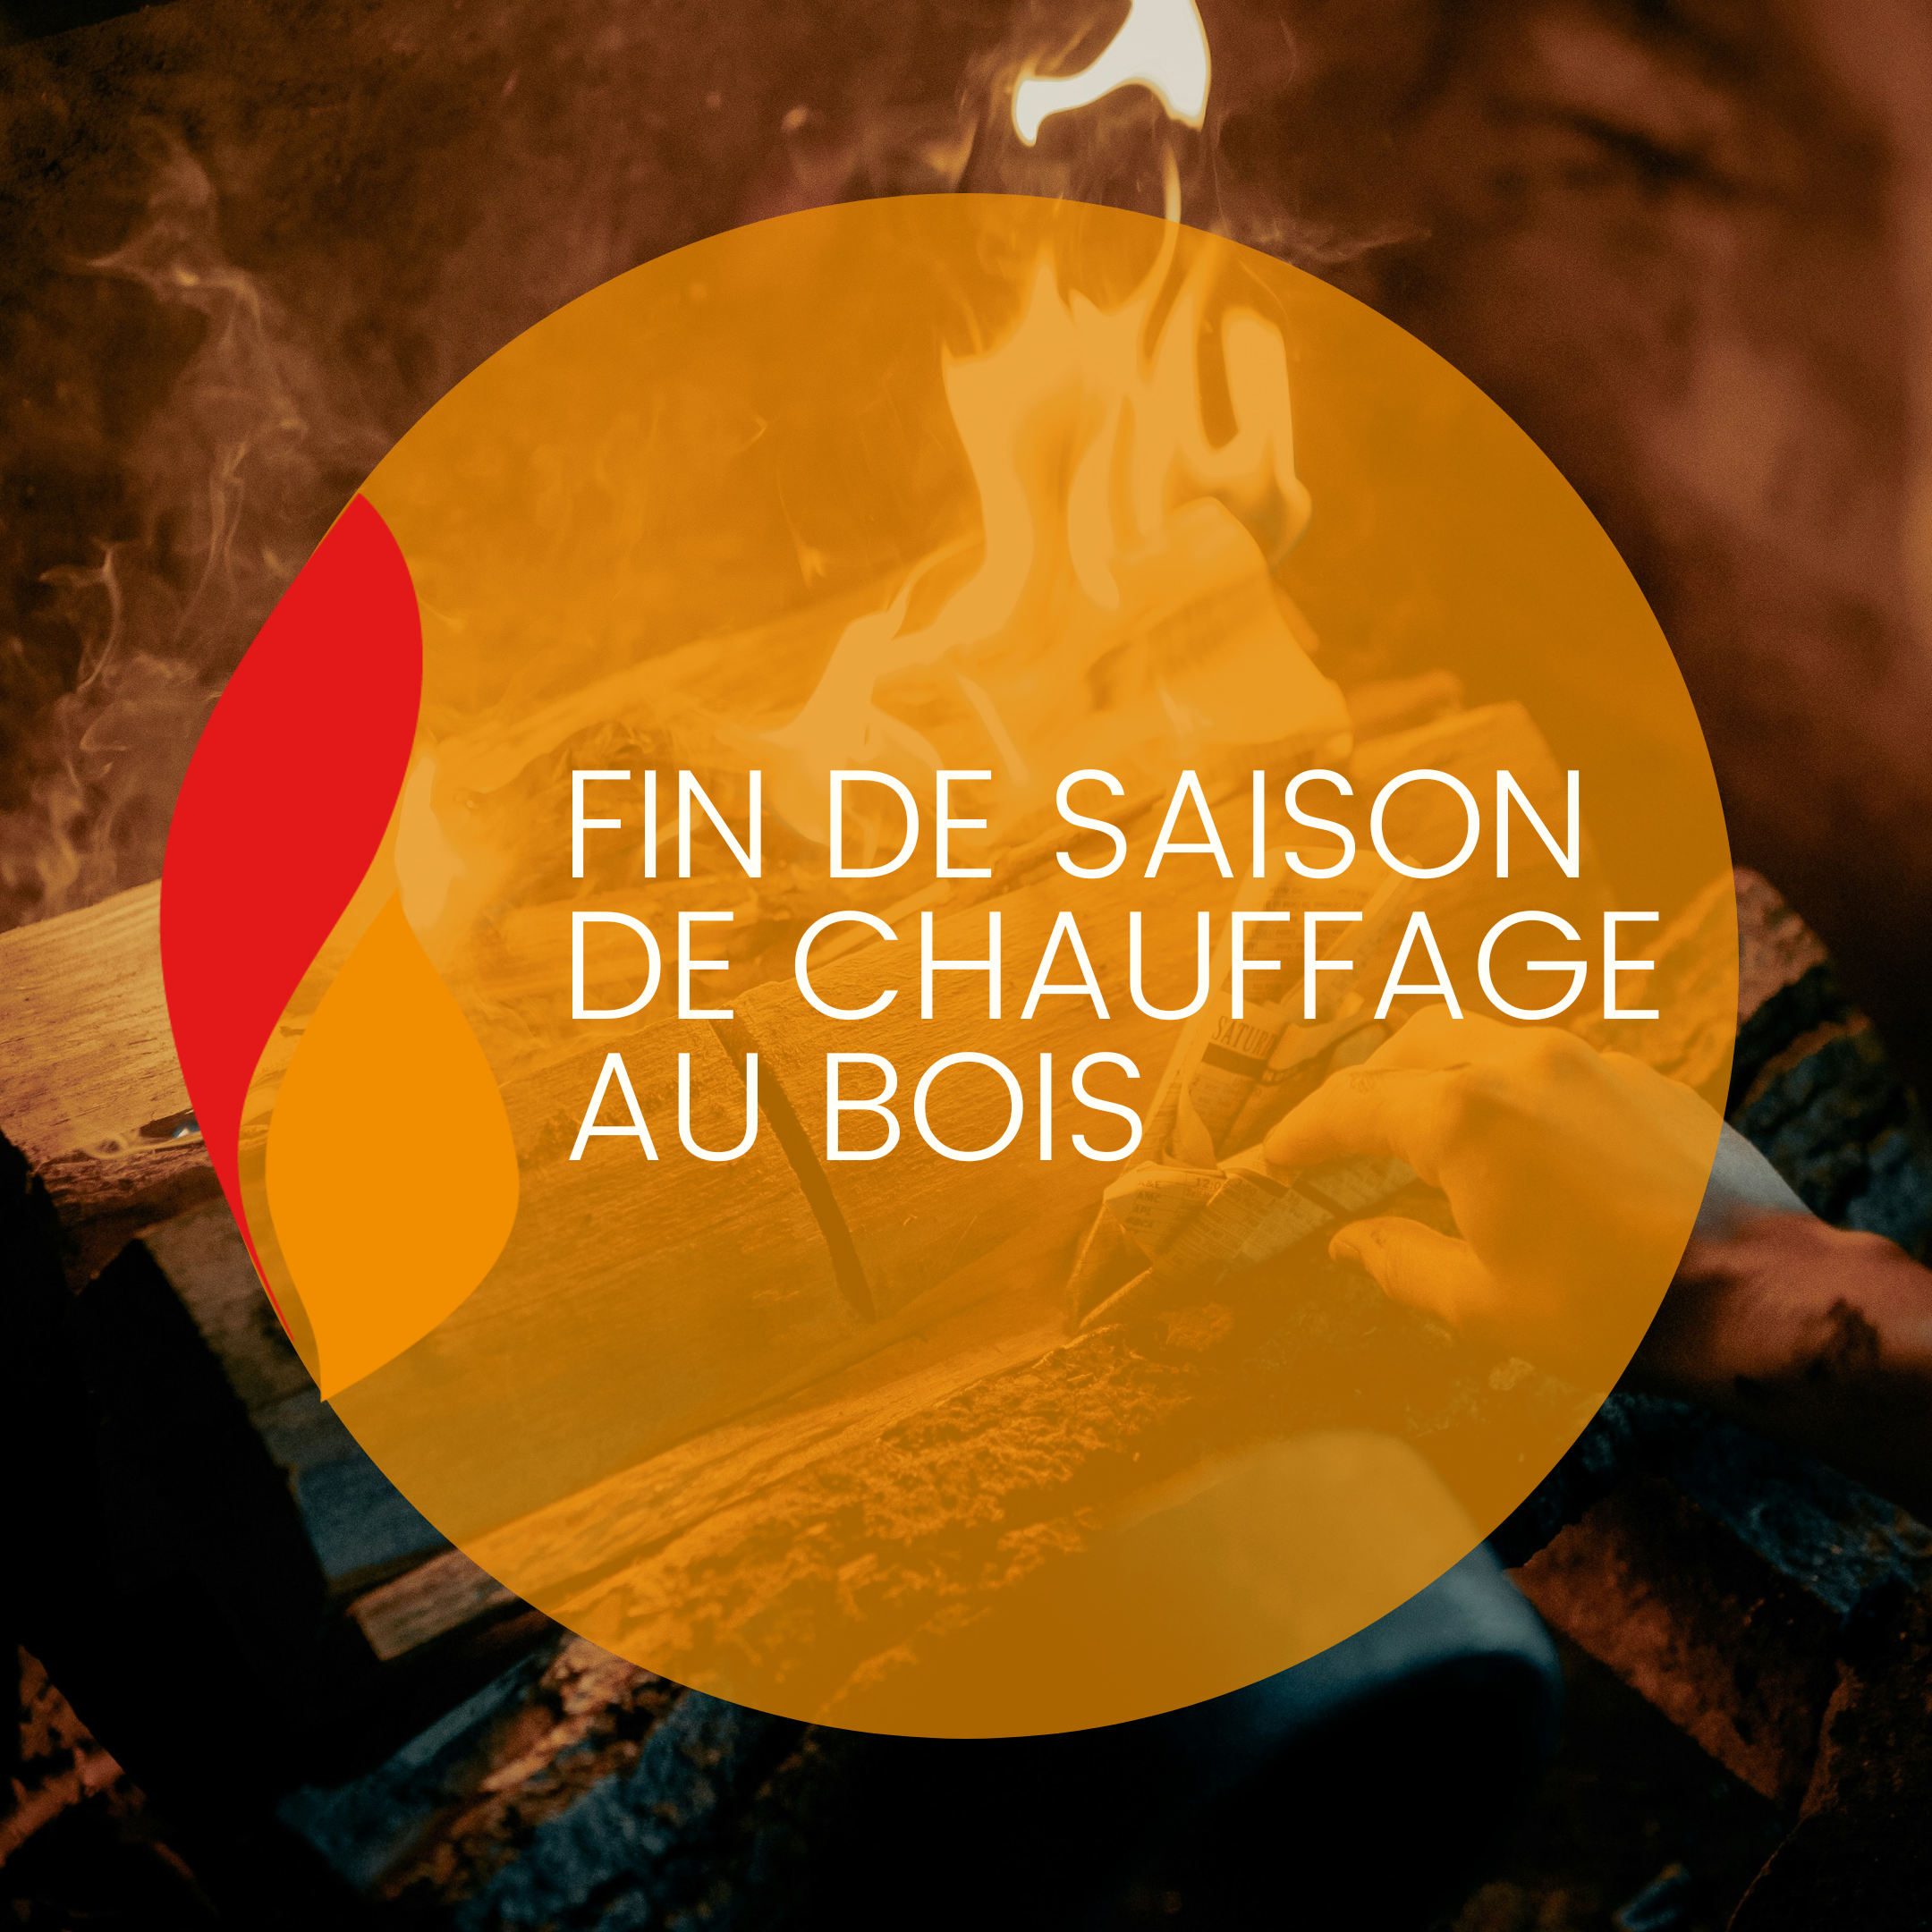 You are currently viewing Fin de saison de chauffage au bois